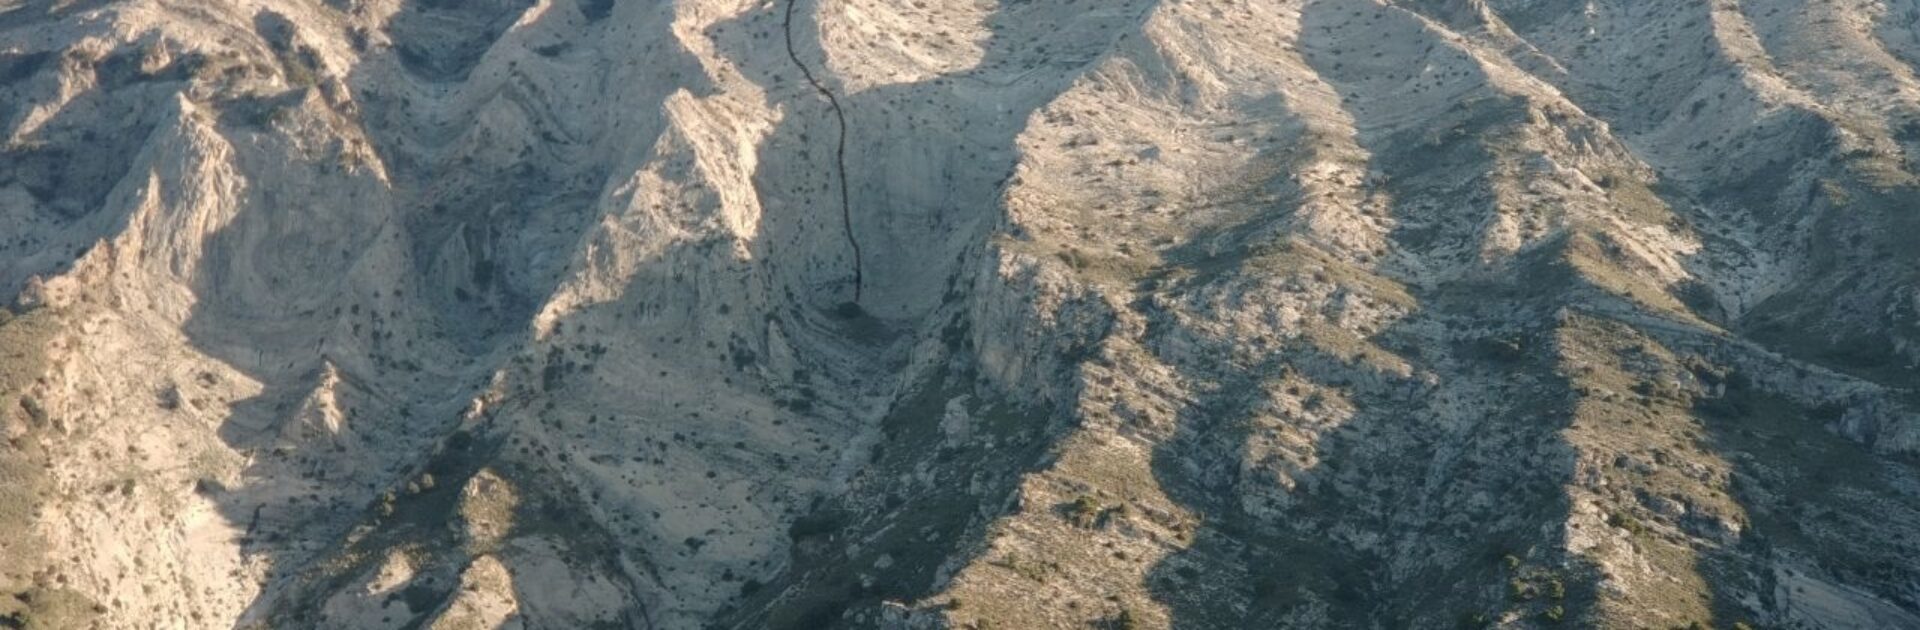 Cazasueños (Vía Jaime). Nueva vía de Escalada Clásica en la cara Sur de La Maroma.